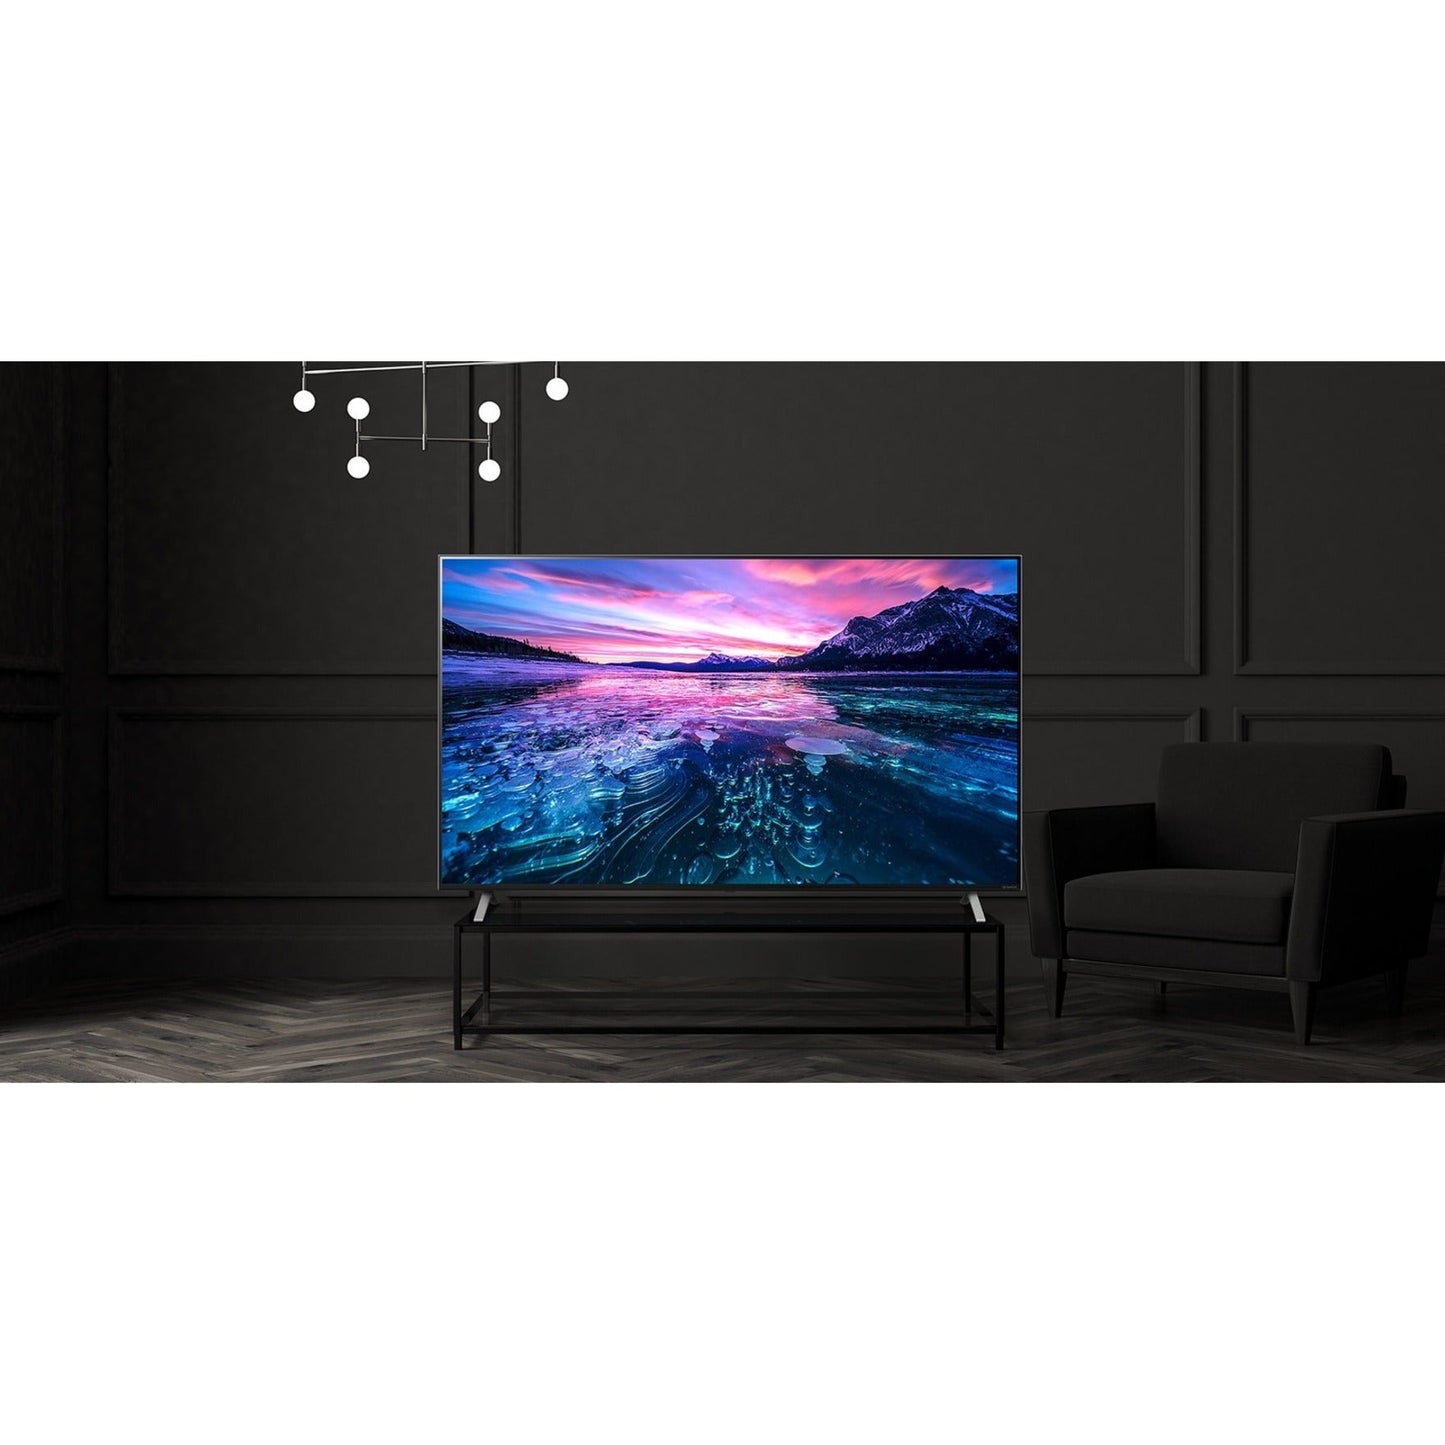 LG UR760H 50UR760H9UA 50" Smart LED-LCD TV - 4K UHDTV - Navy Blue